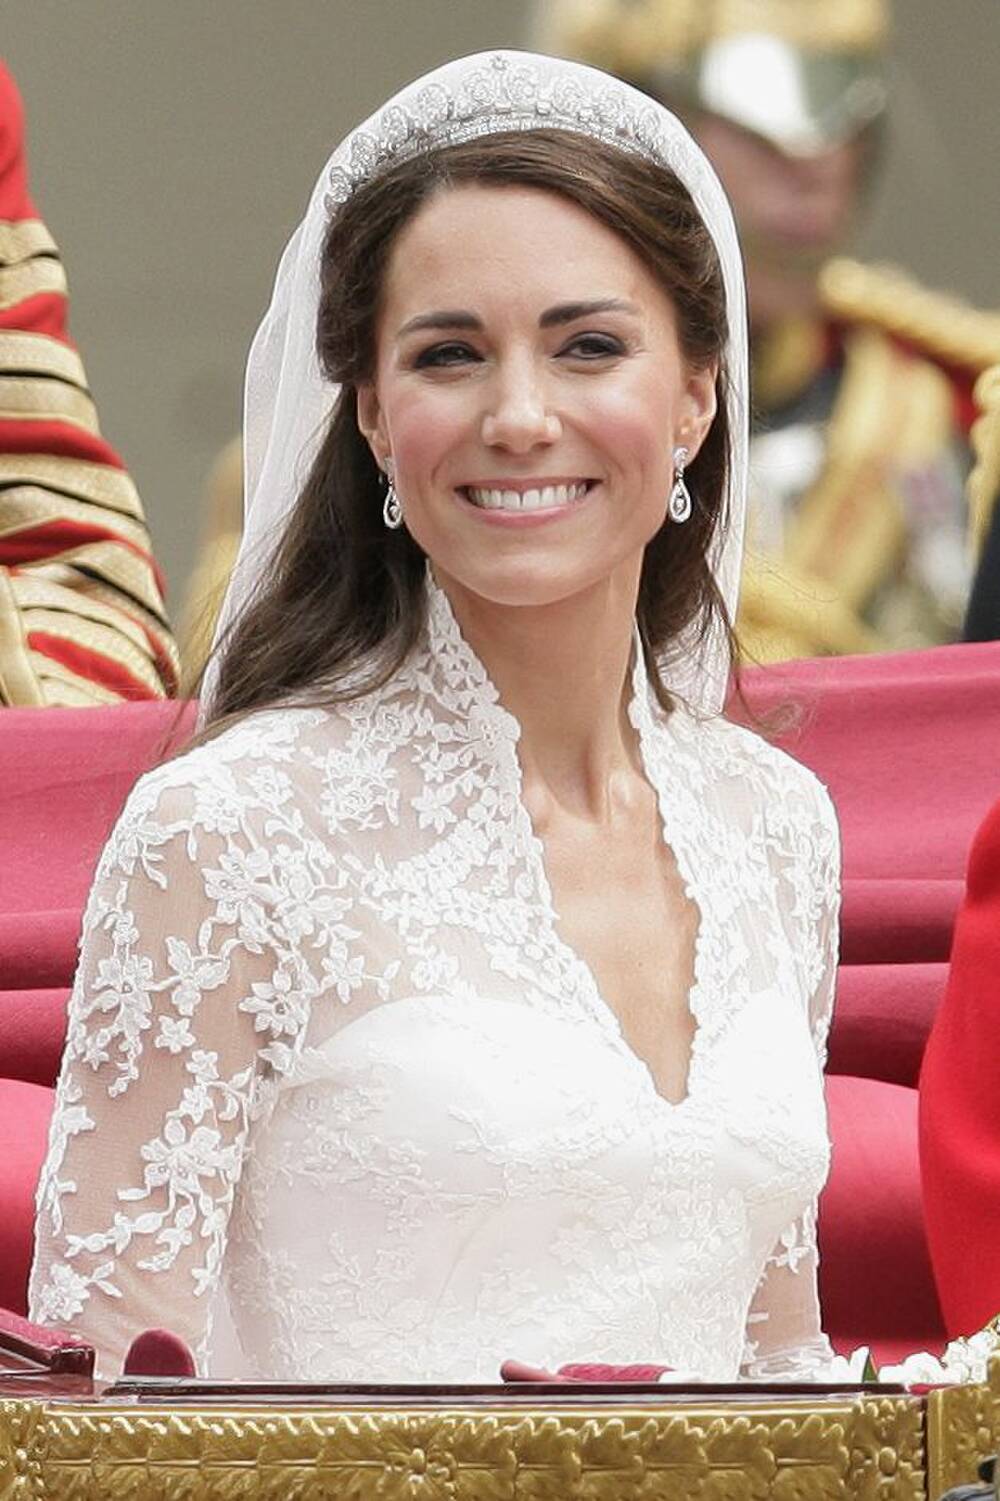 Trong đám cưới với Hoàng tử William, Kate đã đeo Cartier Scroll Tiara và hoa tai của Robinson Pelham. Đôi bông tai này được chế tác riêng để kết hợp với chiếc vương miện, đồng thời đó cũng là quà cưới từ cha mẹ ruột của cô.